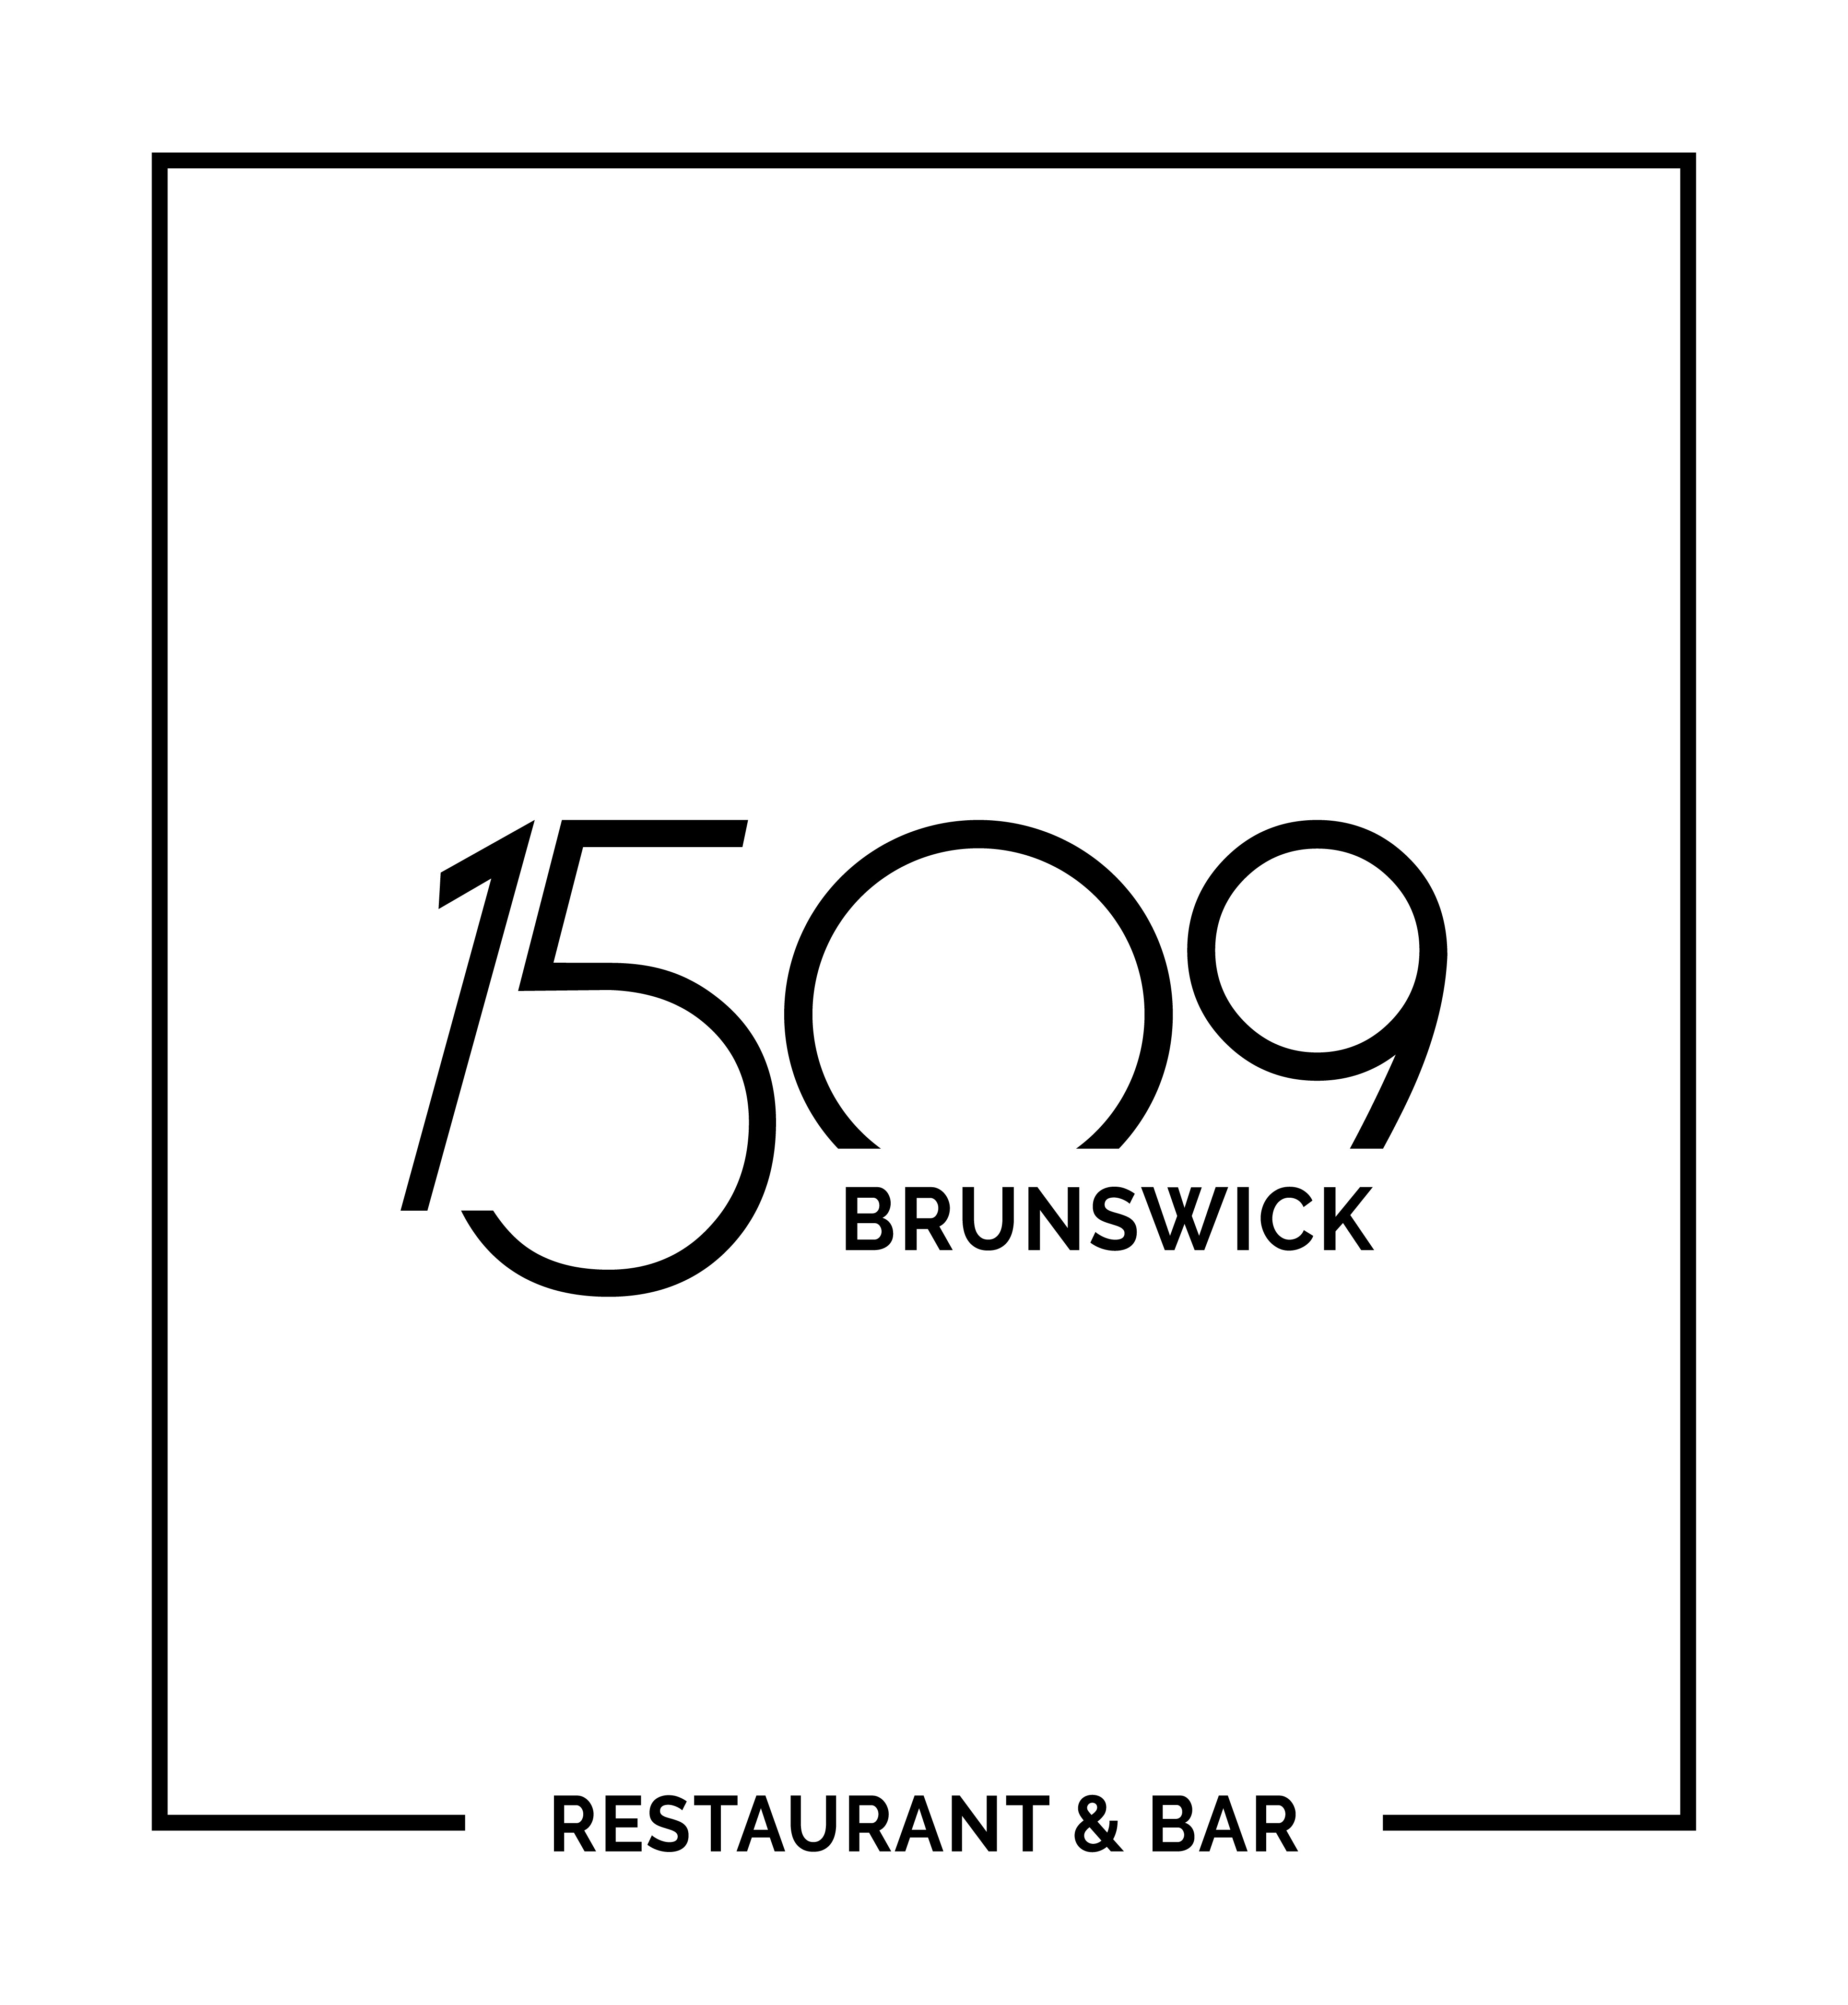 1509 Brunswick